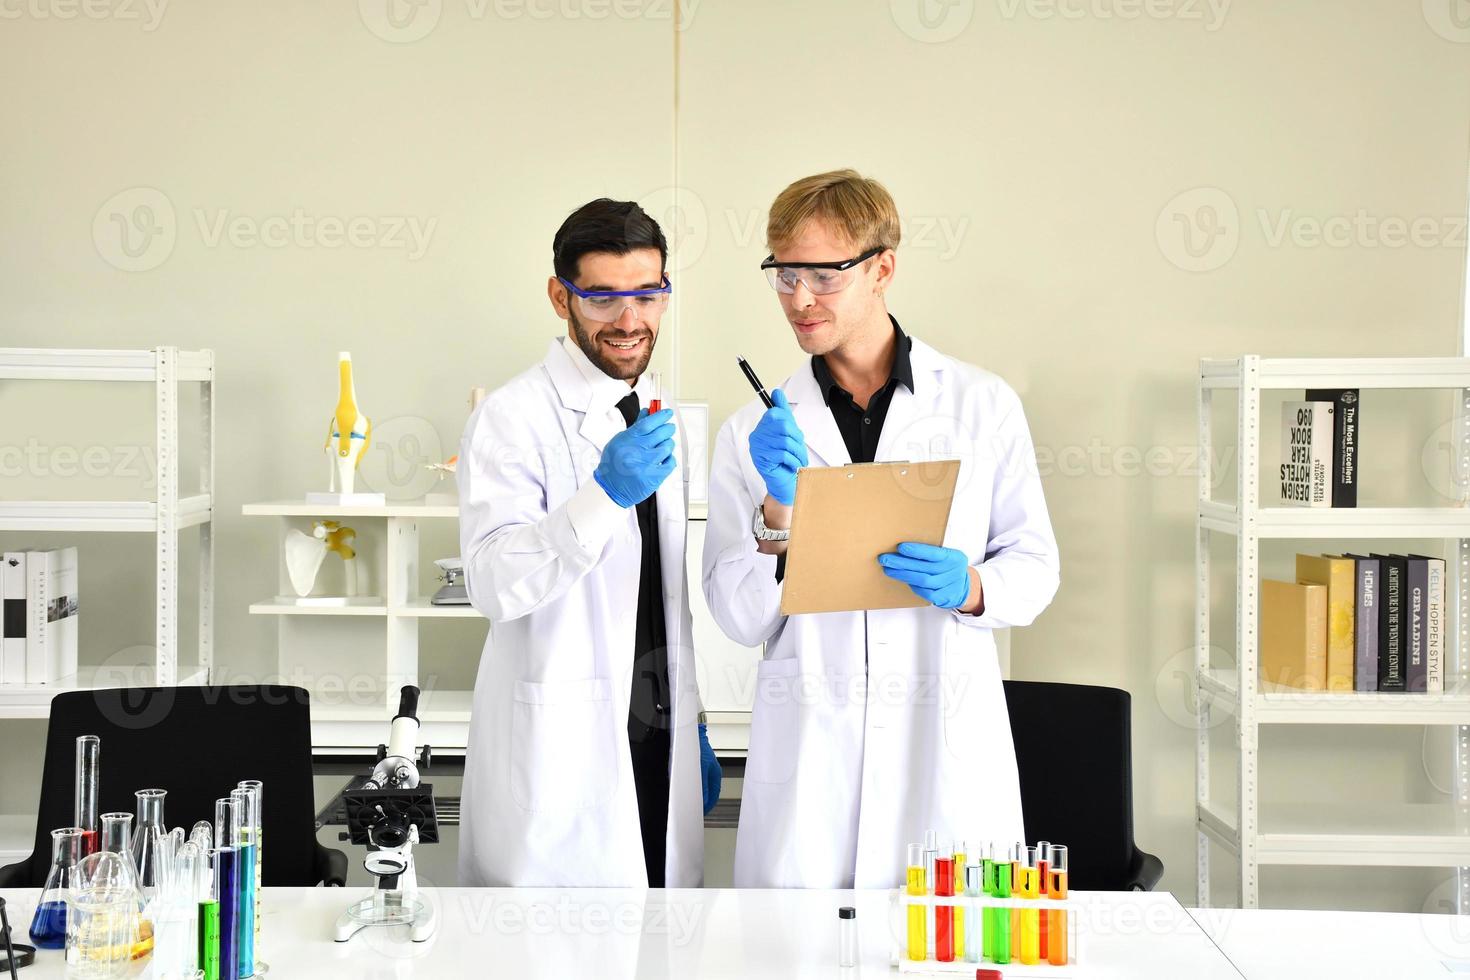 prueba de aceite lubricante de la industria química en concepto de laboratorio. los dos profesionales de la química científica analizan muestras de combustible de gasolina de petróleo en un laboratorio químico. foto